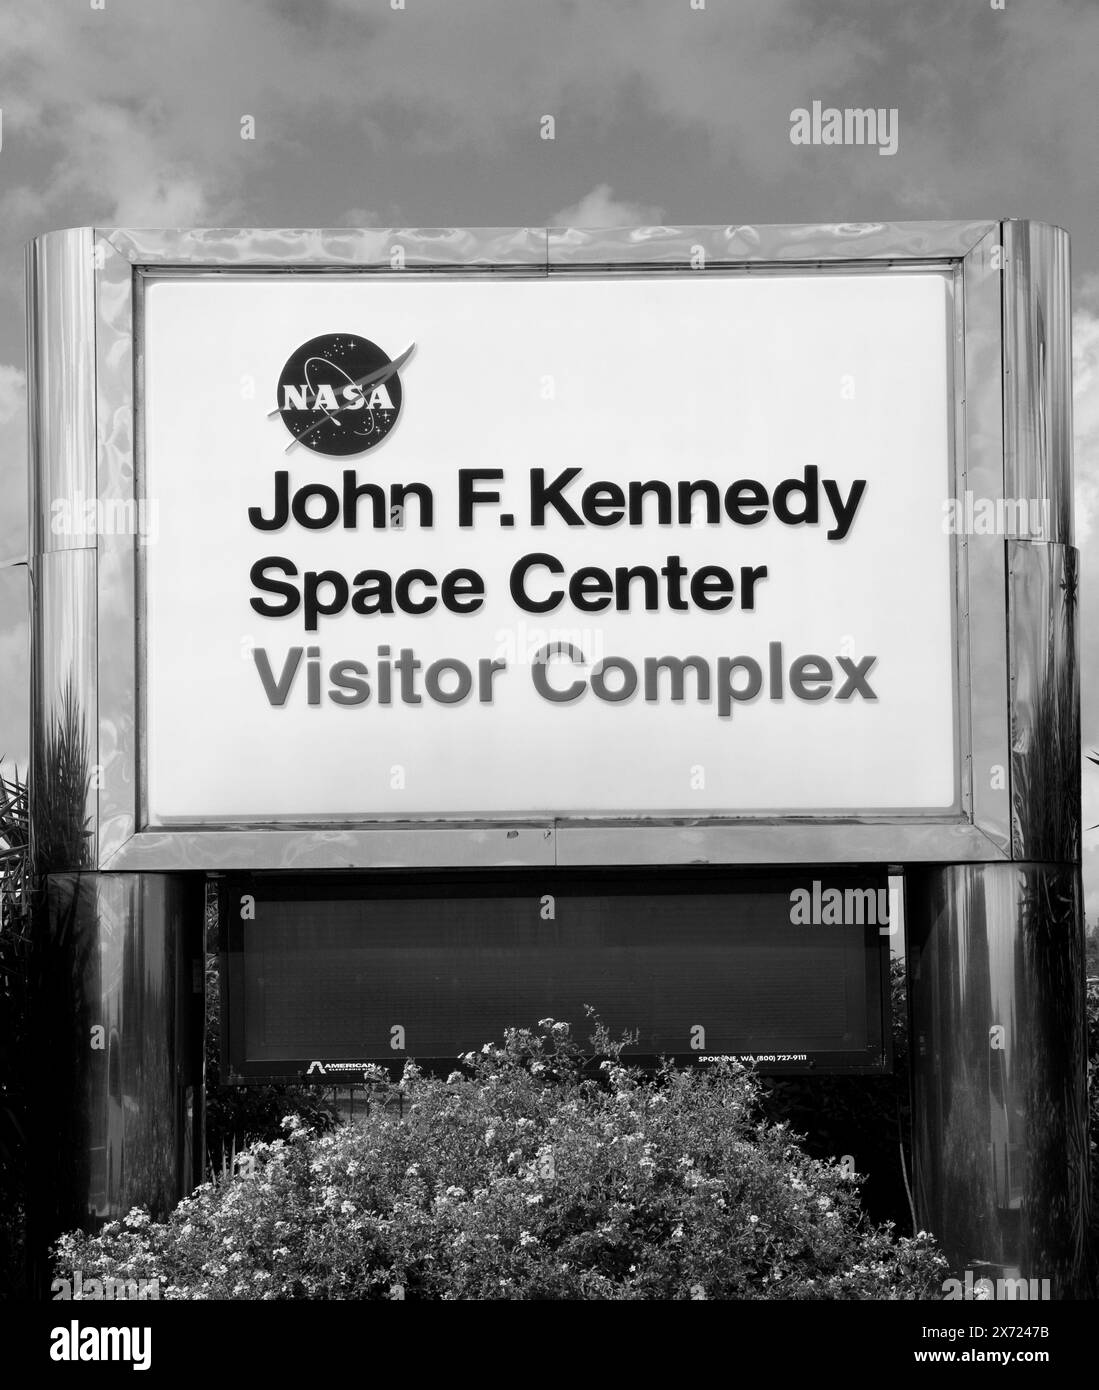 John F. Kennedy Space Center Visitor Complex signe à Titusville, Floride, États-Unis. Banque D'Images